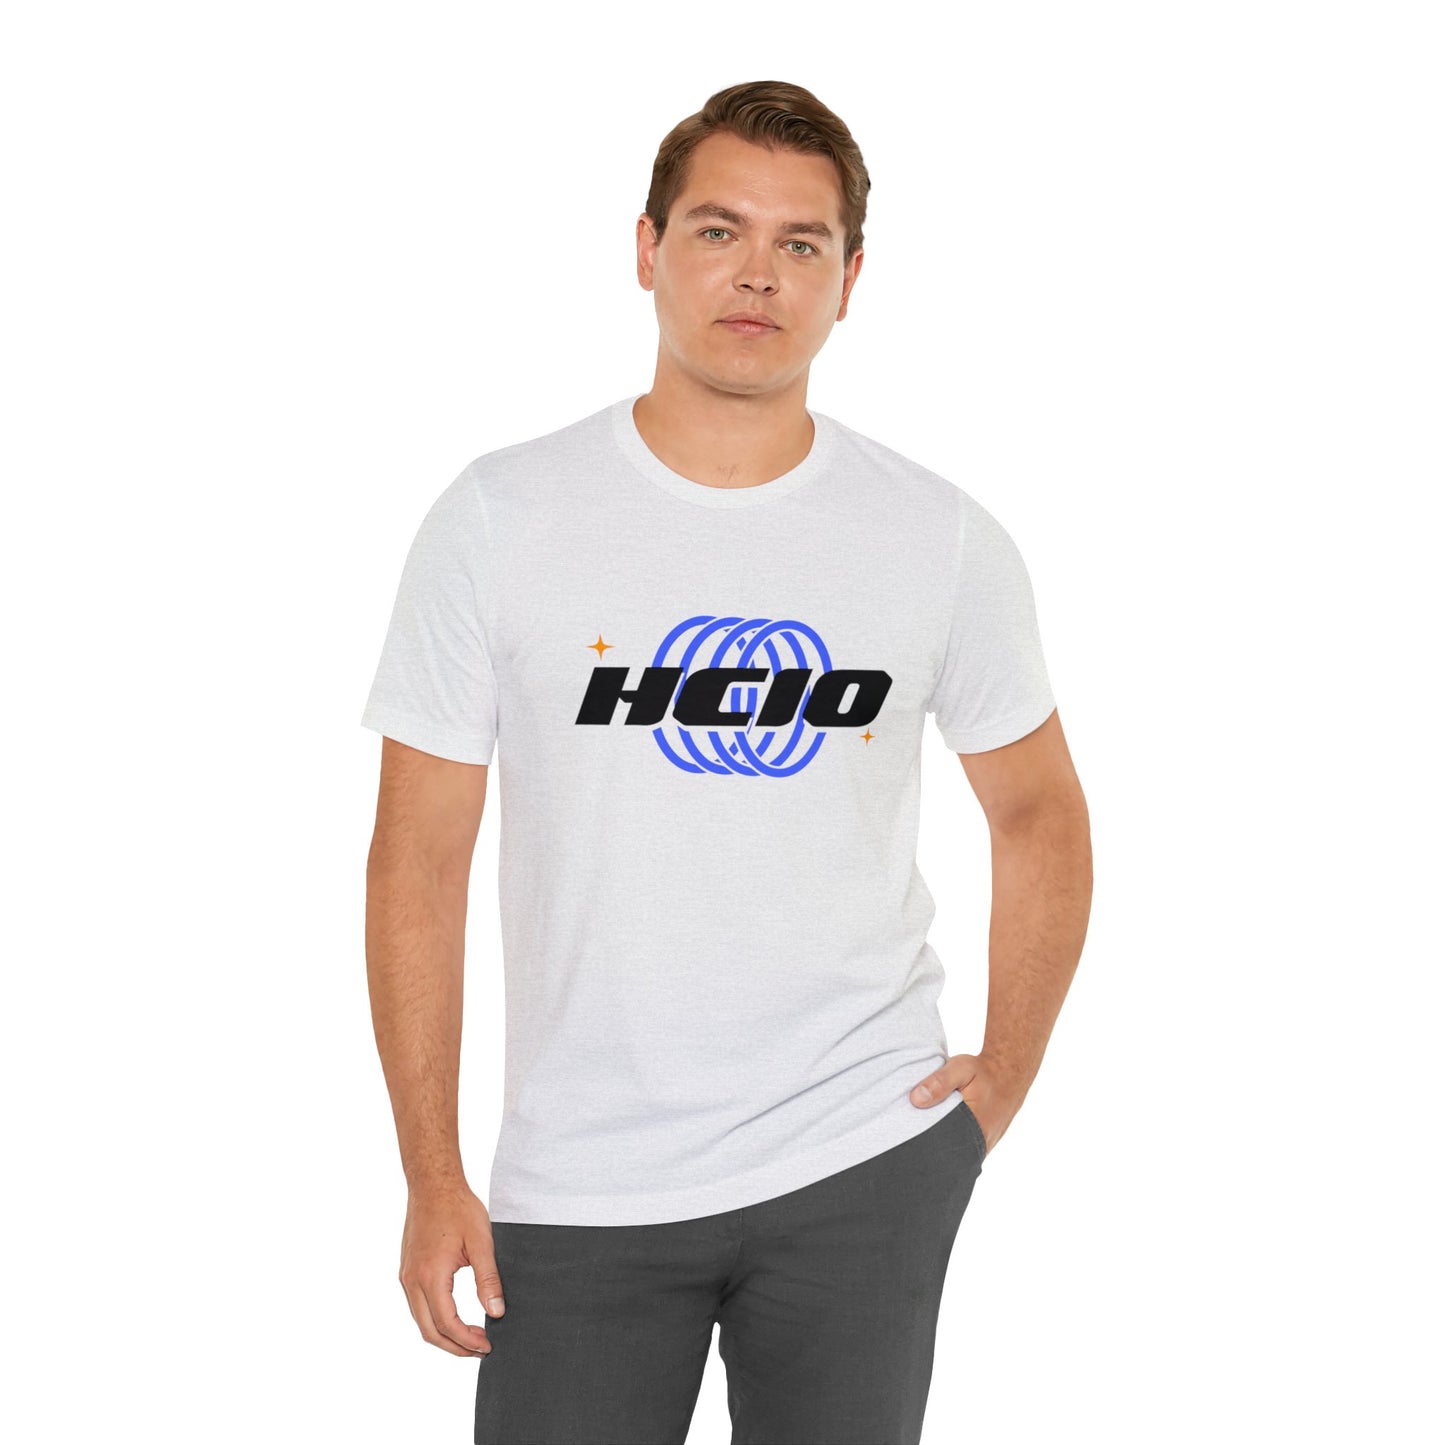 HCIO Logo T